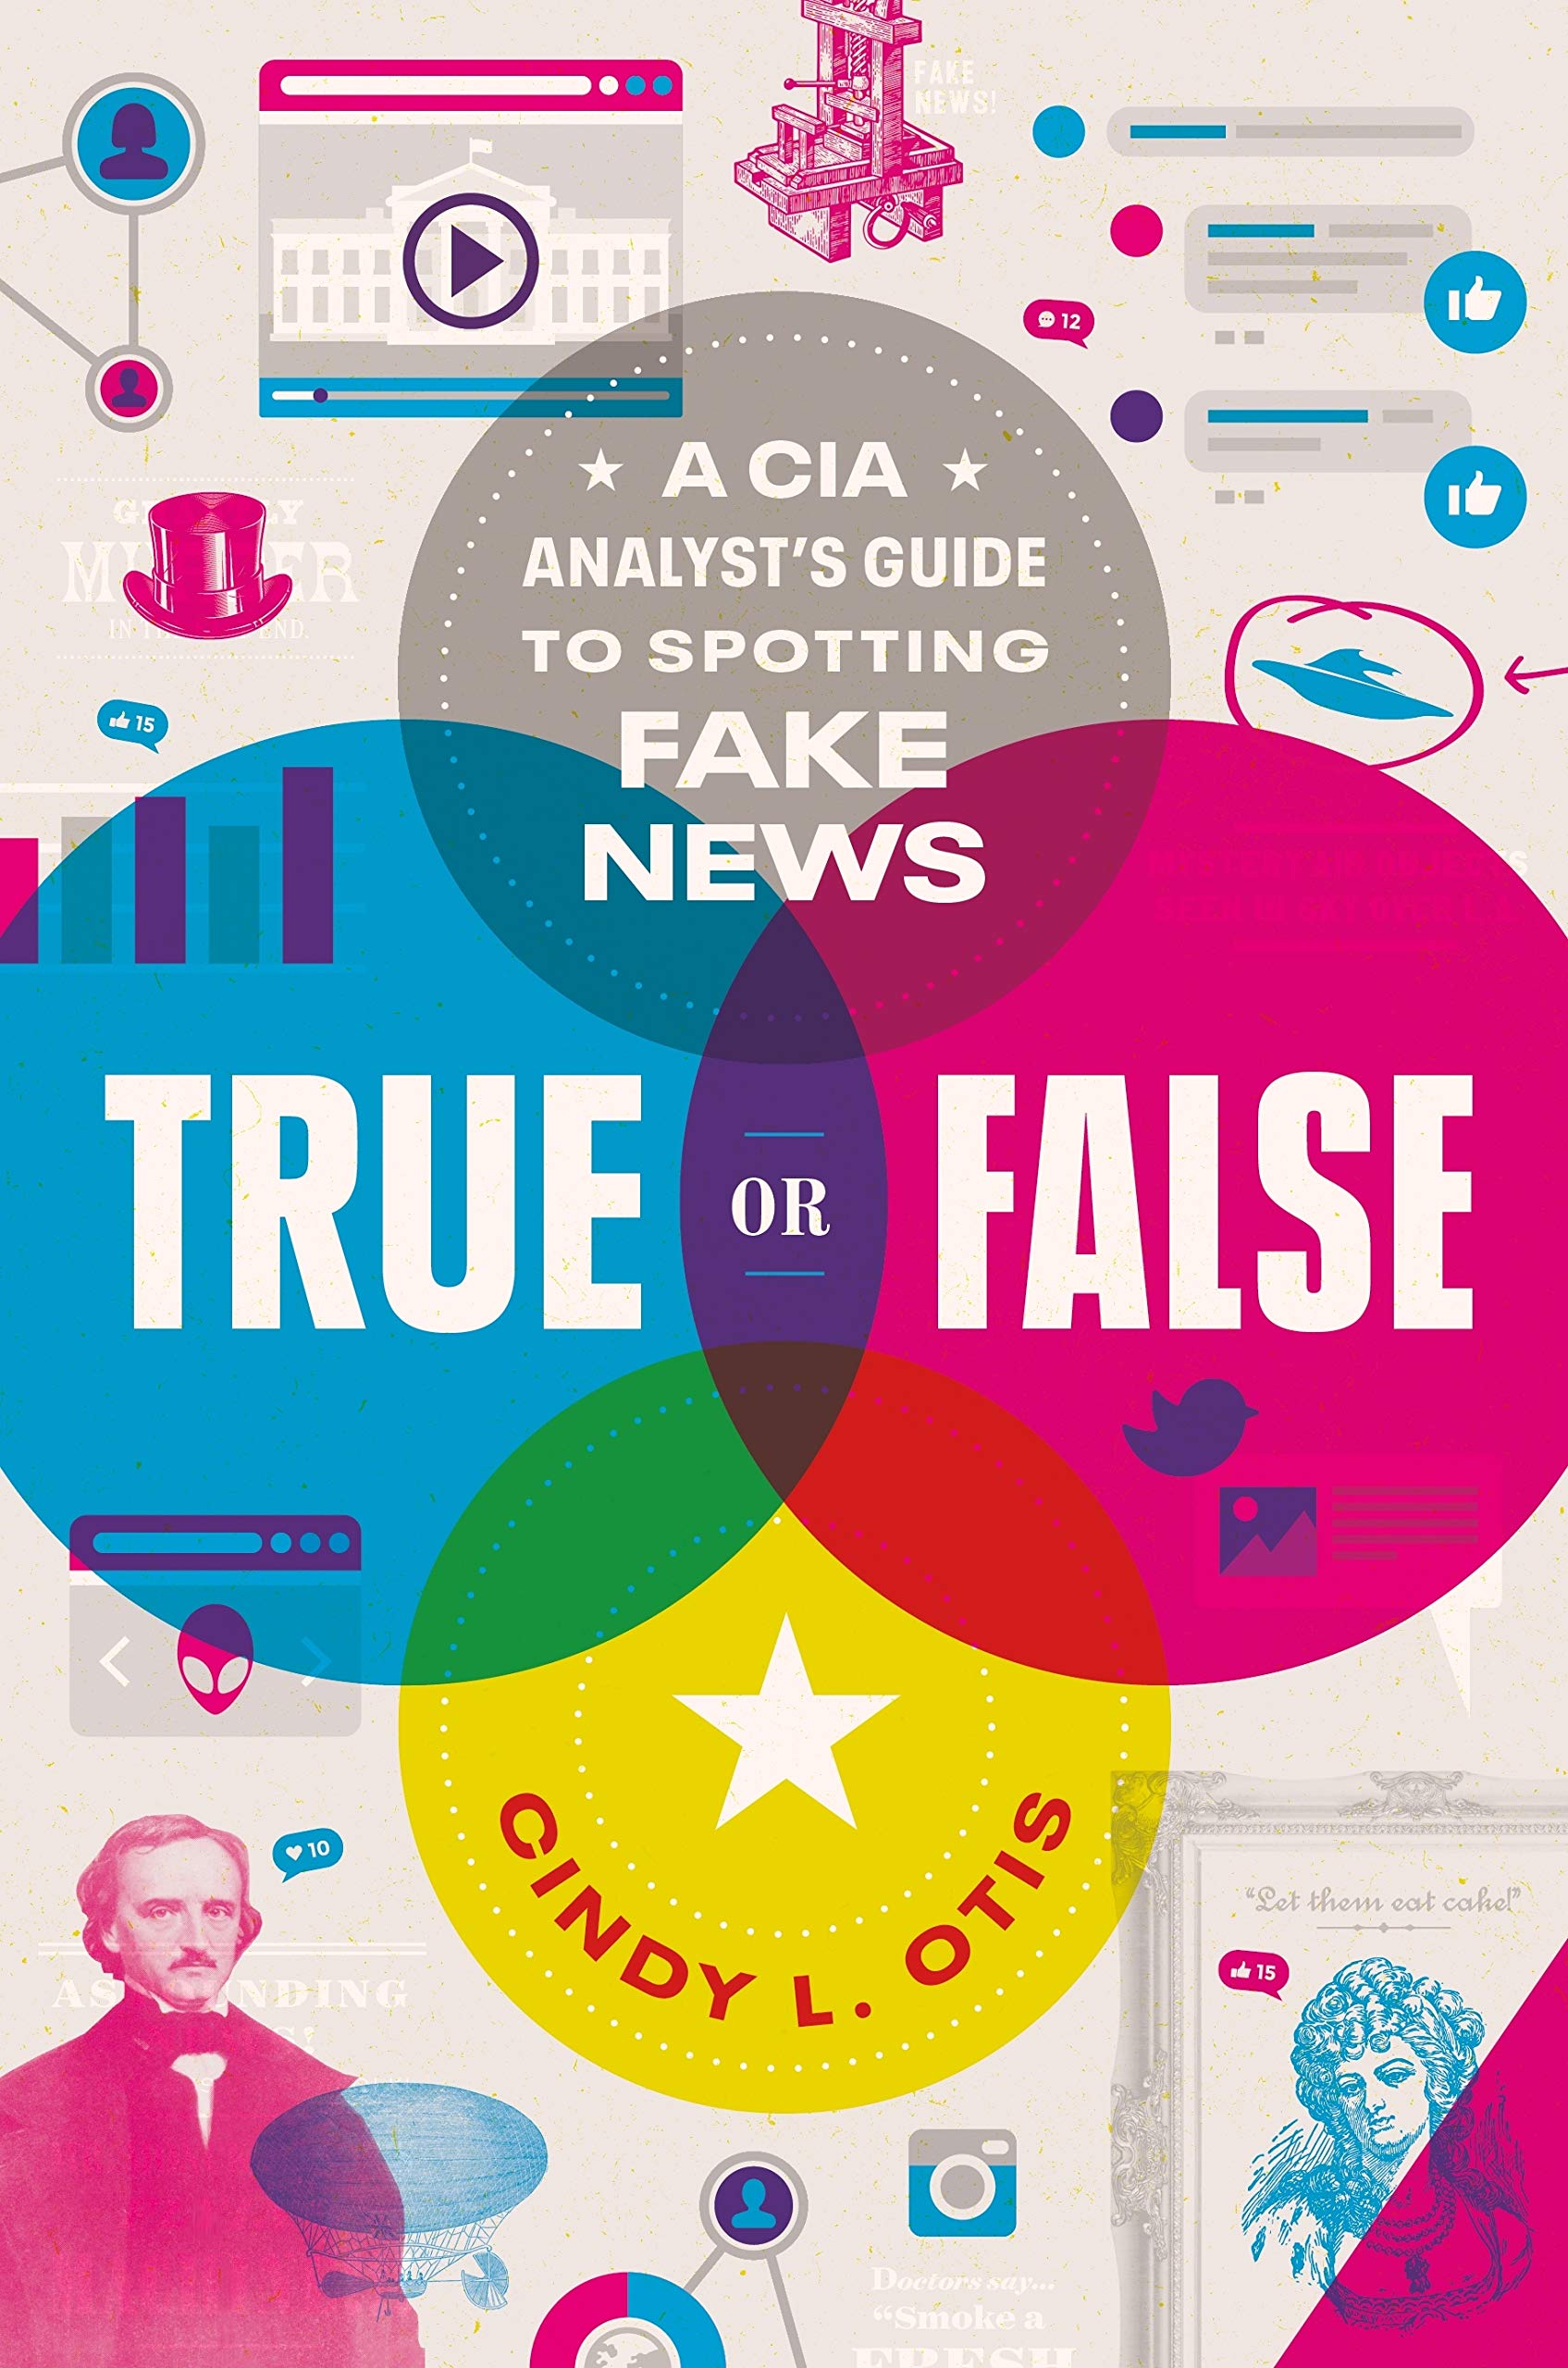 Cover image for "True or False"